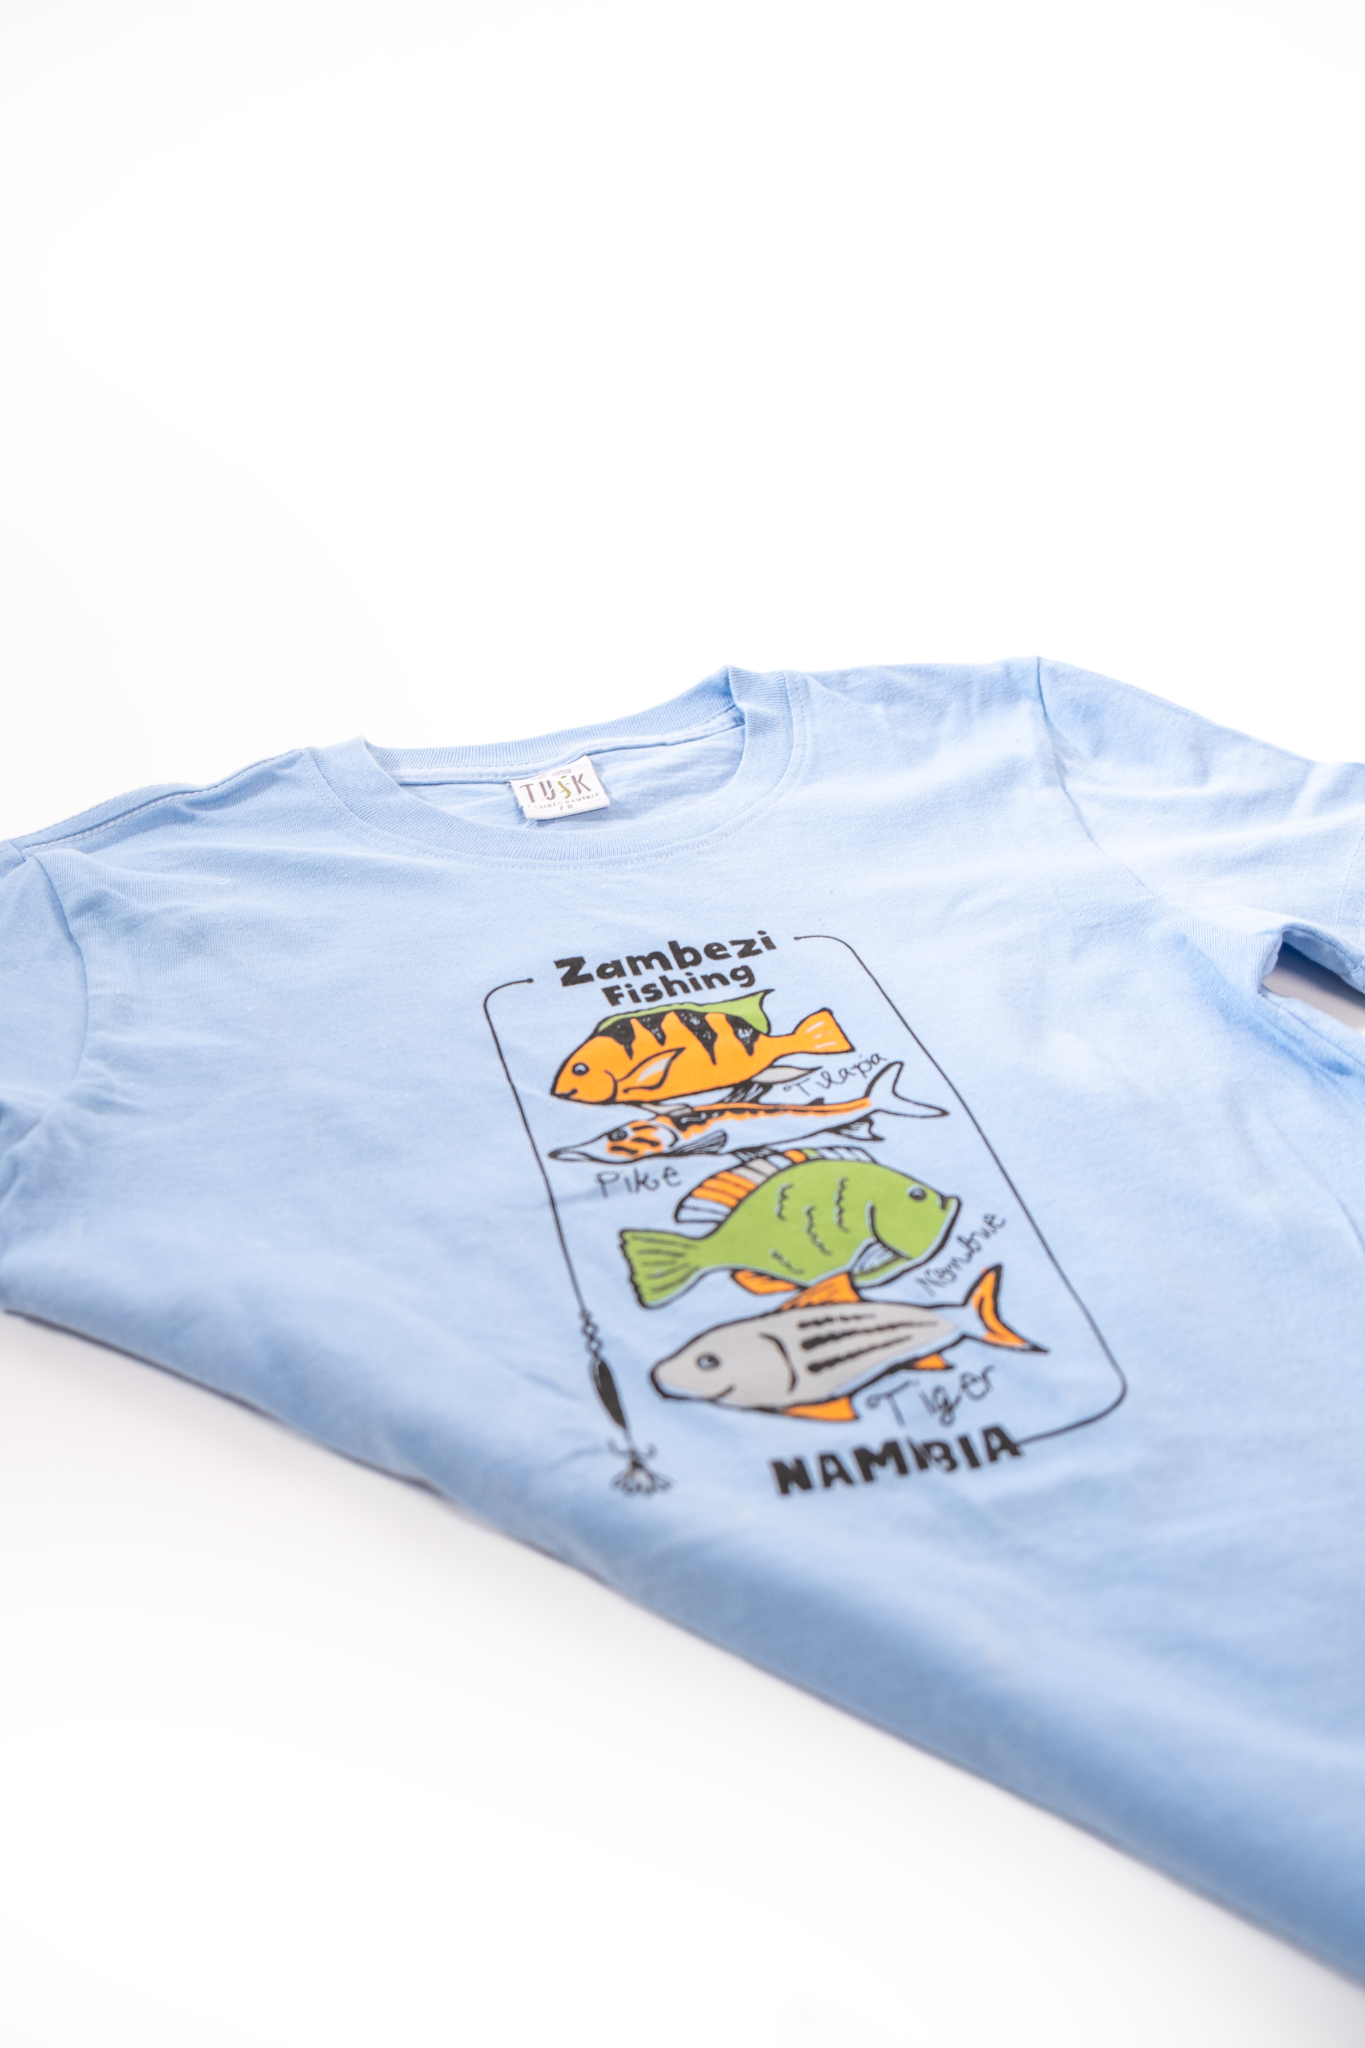 Zambezi Fishing Kids T-shirt - Blue